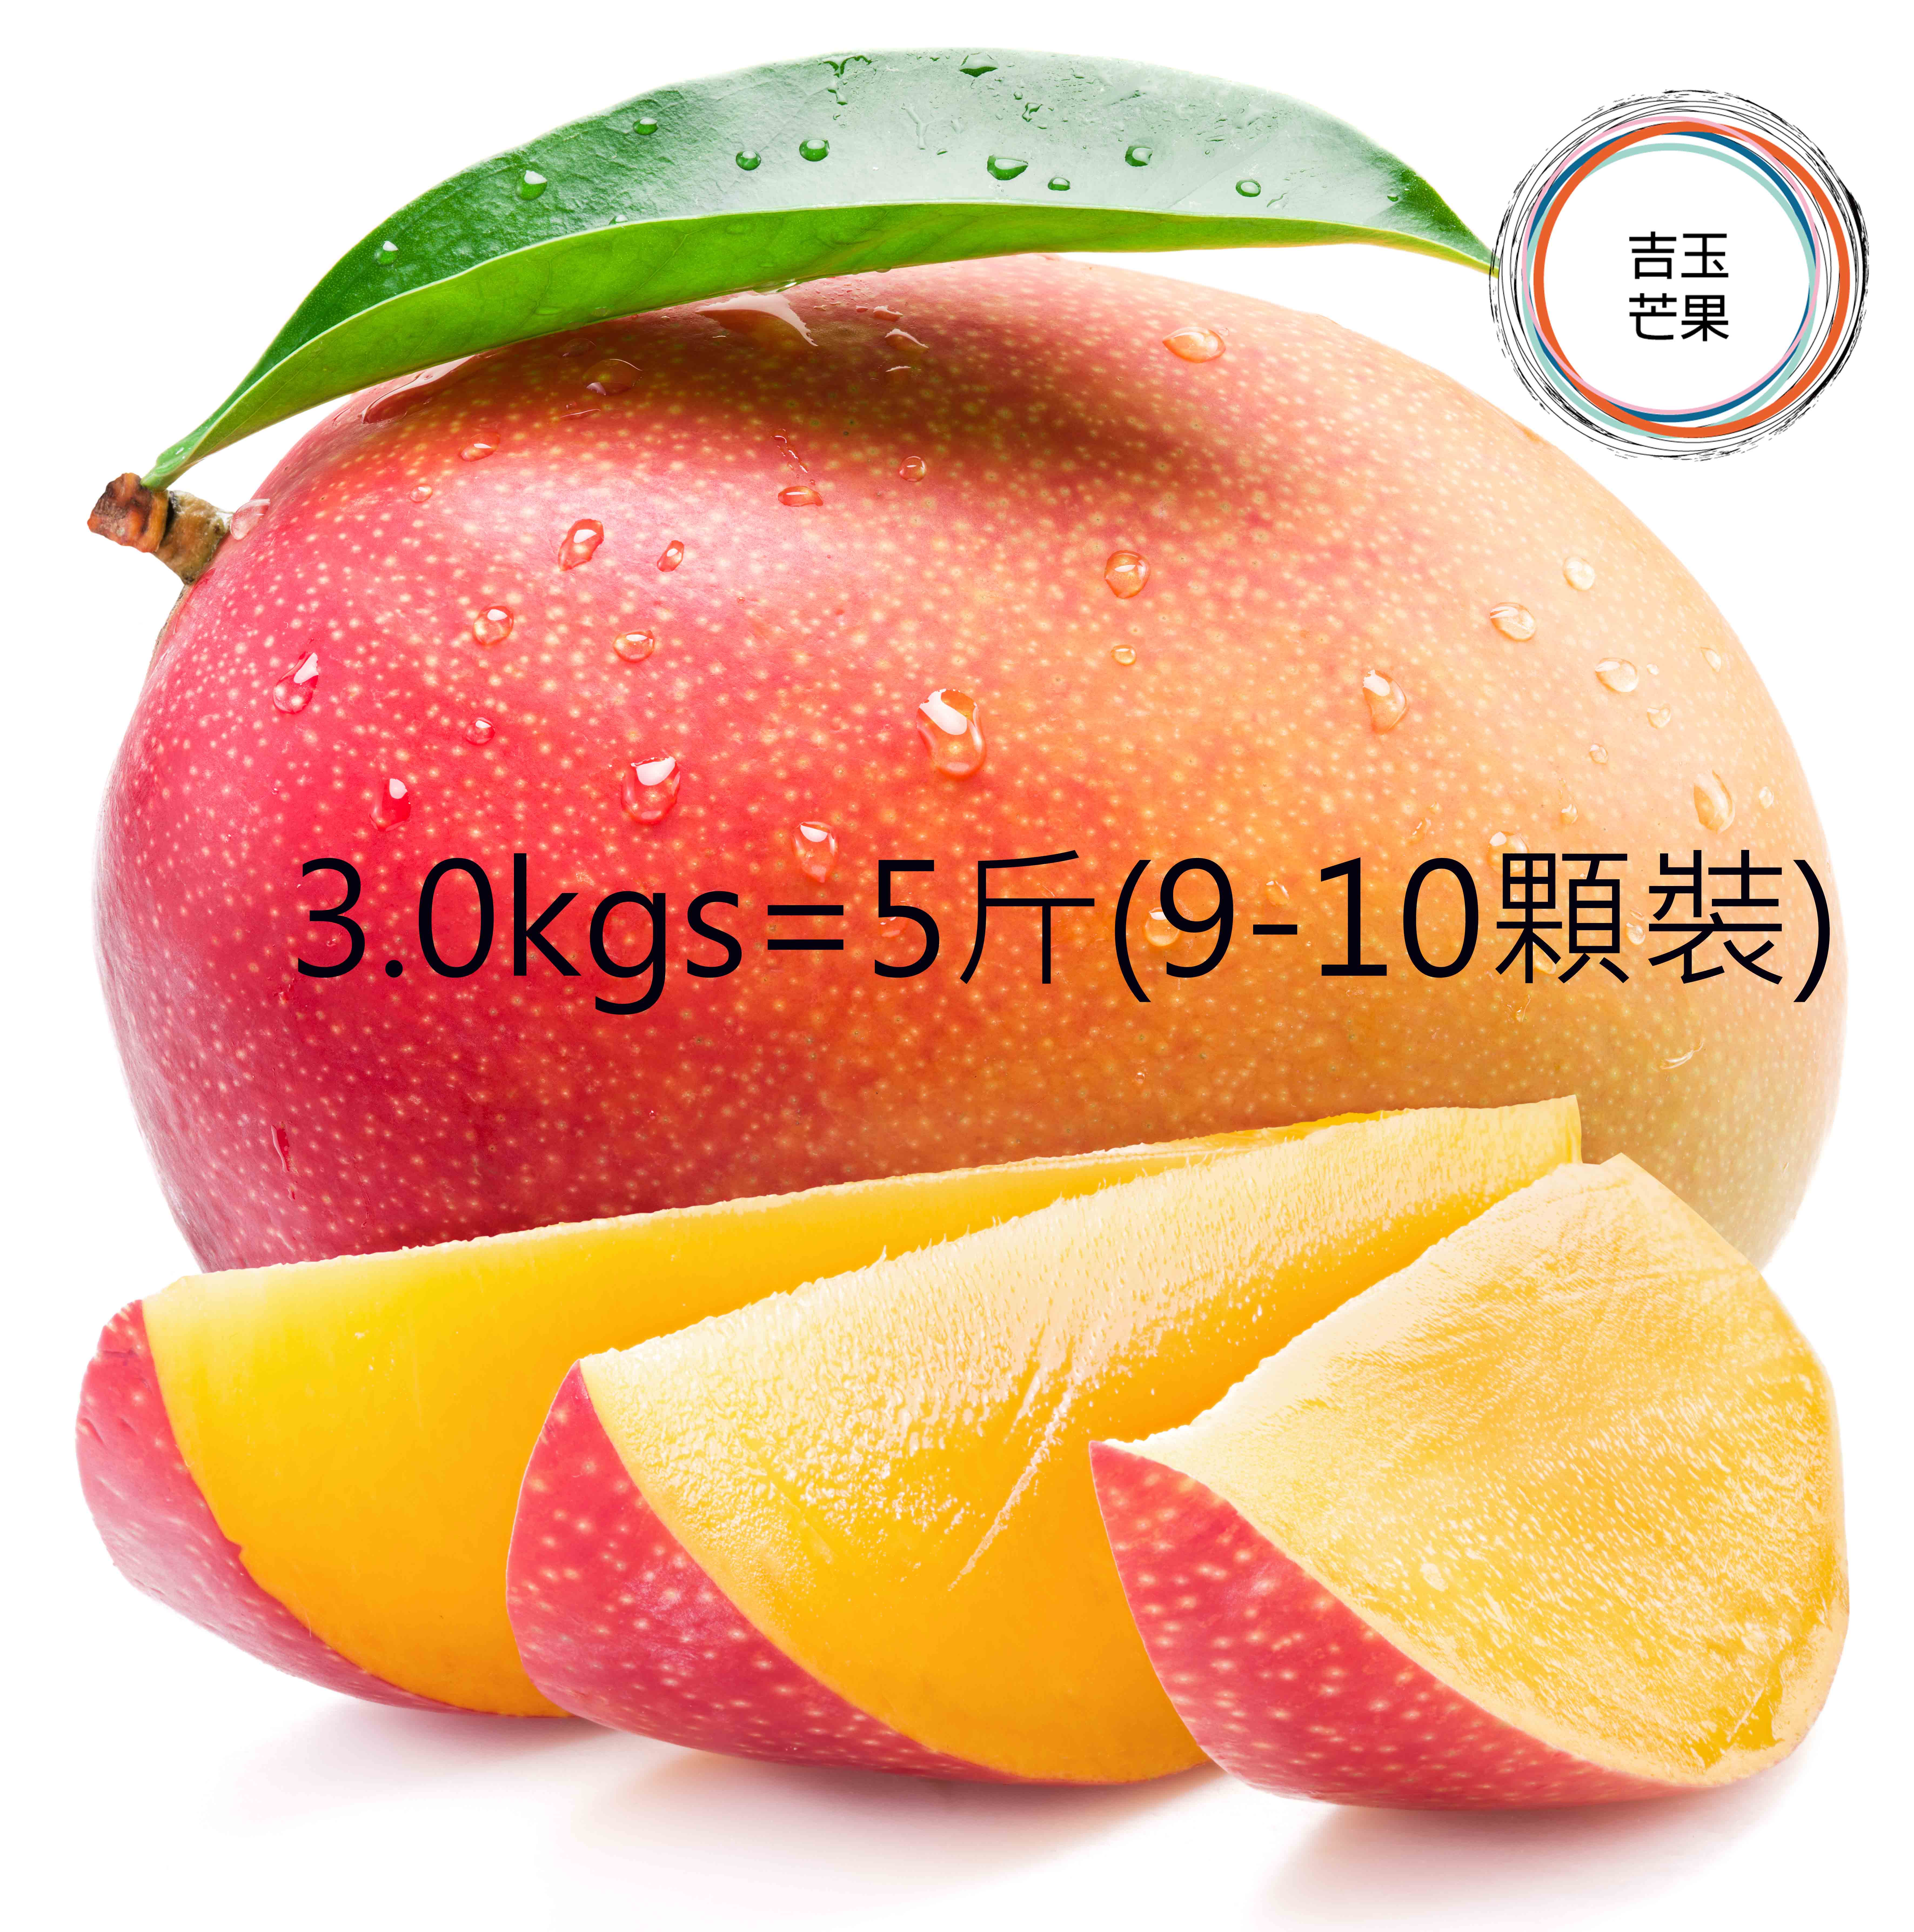 屏東枋山愛文芒果果 外銷日本產地 吉園圃認證 マンゴー mango [ 預購免運 ] (5斤/ 9-10 顆裝)